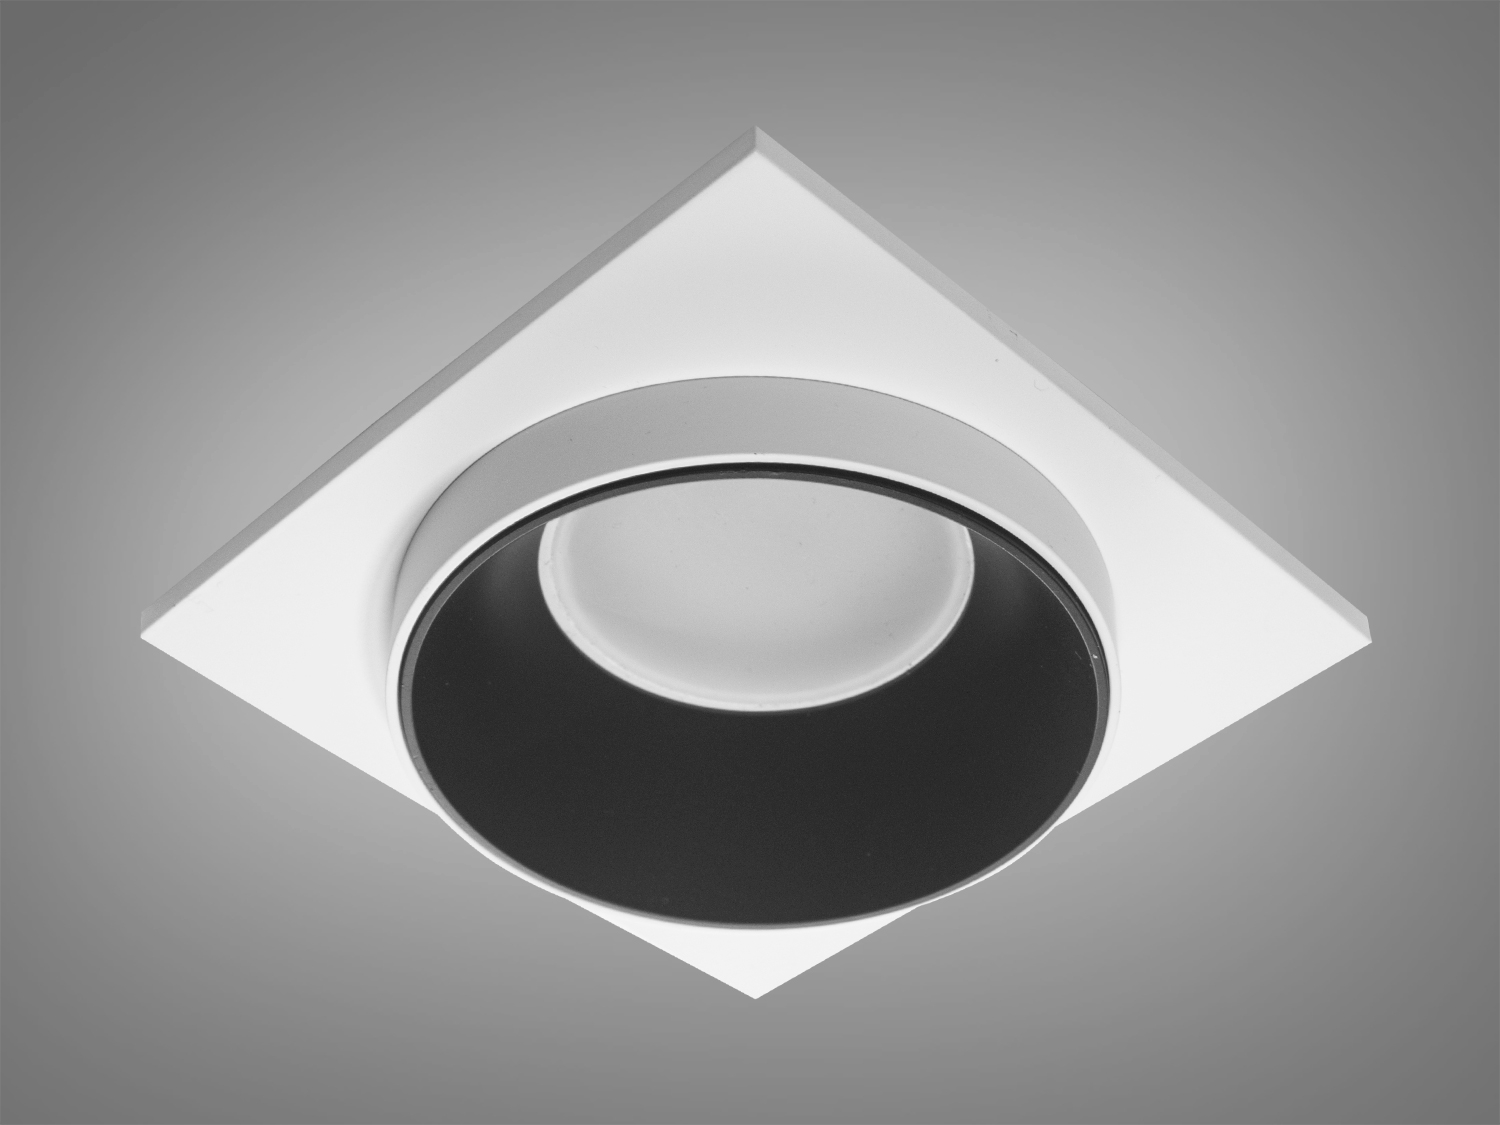 Нова серія точкових світильників дозволить зробити Вашу квартиру стильною та сучасною. Дані світильники ідеально підходять для світлодіодних ламп, які забезпечують найкращі параметри освітлення та енергозбереження, дозволяючи дизайнеру інтер'єру можливість для креативу. 
Точковий світильник - це спеціальний вбудований світильник, який використовується для спрямованого або загального підсвічування певних ділянок Вашої квартири. Їх застосовують на кухні, у ванній кімнаті, для освітлення сходів та у житлових кімнатах. При рівномірному розподілі різних джерел світла (наприклад: люстра в центрі кімнати + точкові світильники по краю стелі) ви можете досягти ефекту відсутності тіні і зорово збільшити простір кімнати. Куди б Ви не подивилися, точкові світильники будуть висвітлювати простір перед Вами та всі предмети, що Вас оточують. 
Алюмінієві світильники не схильні до корозії, добре відводять тепло від лампи. 
Лампа до комплекту не входить. 